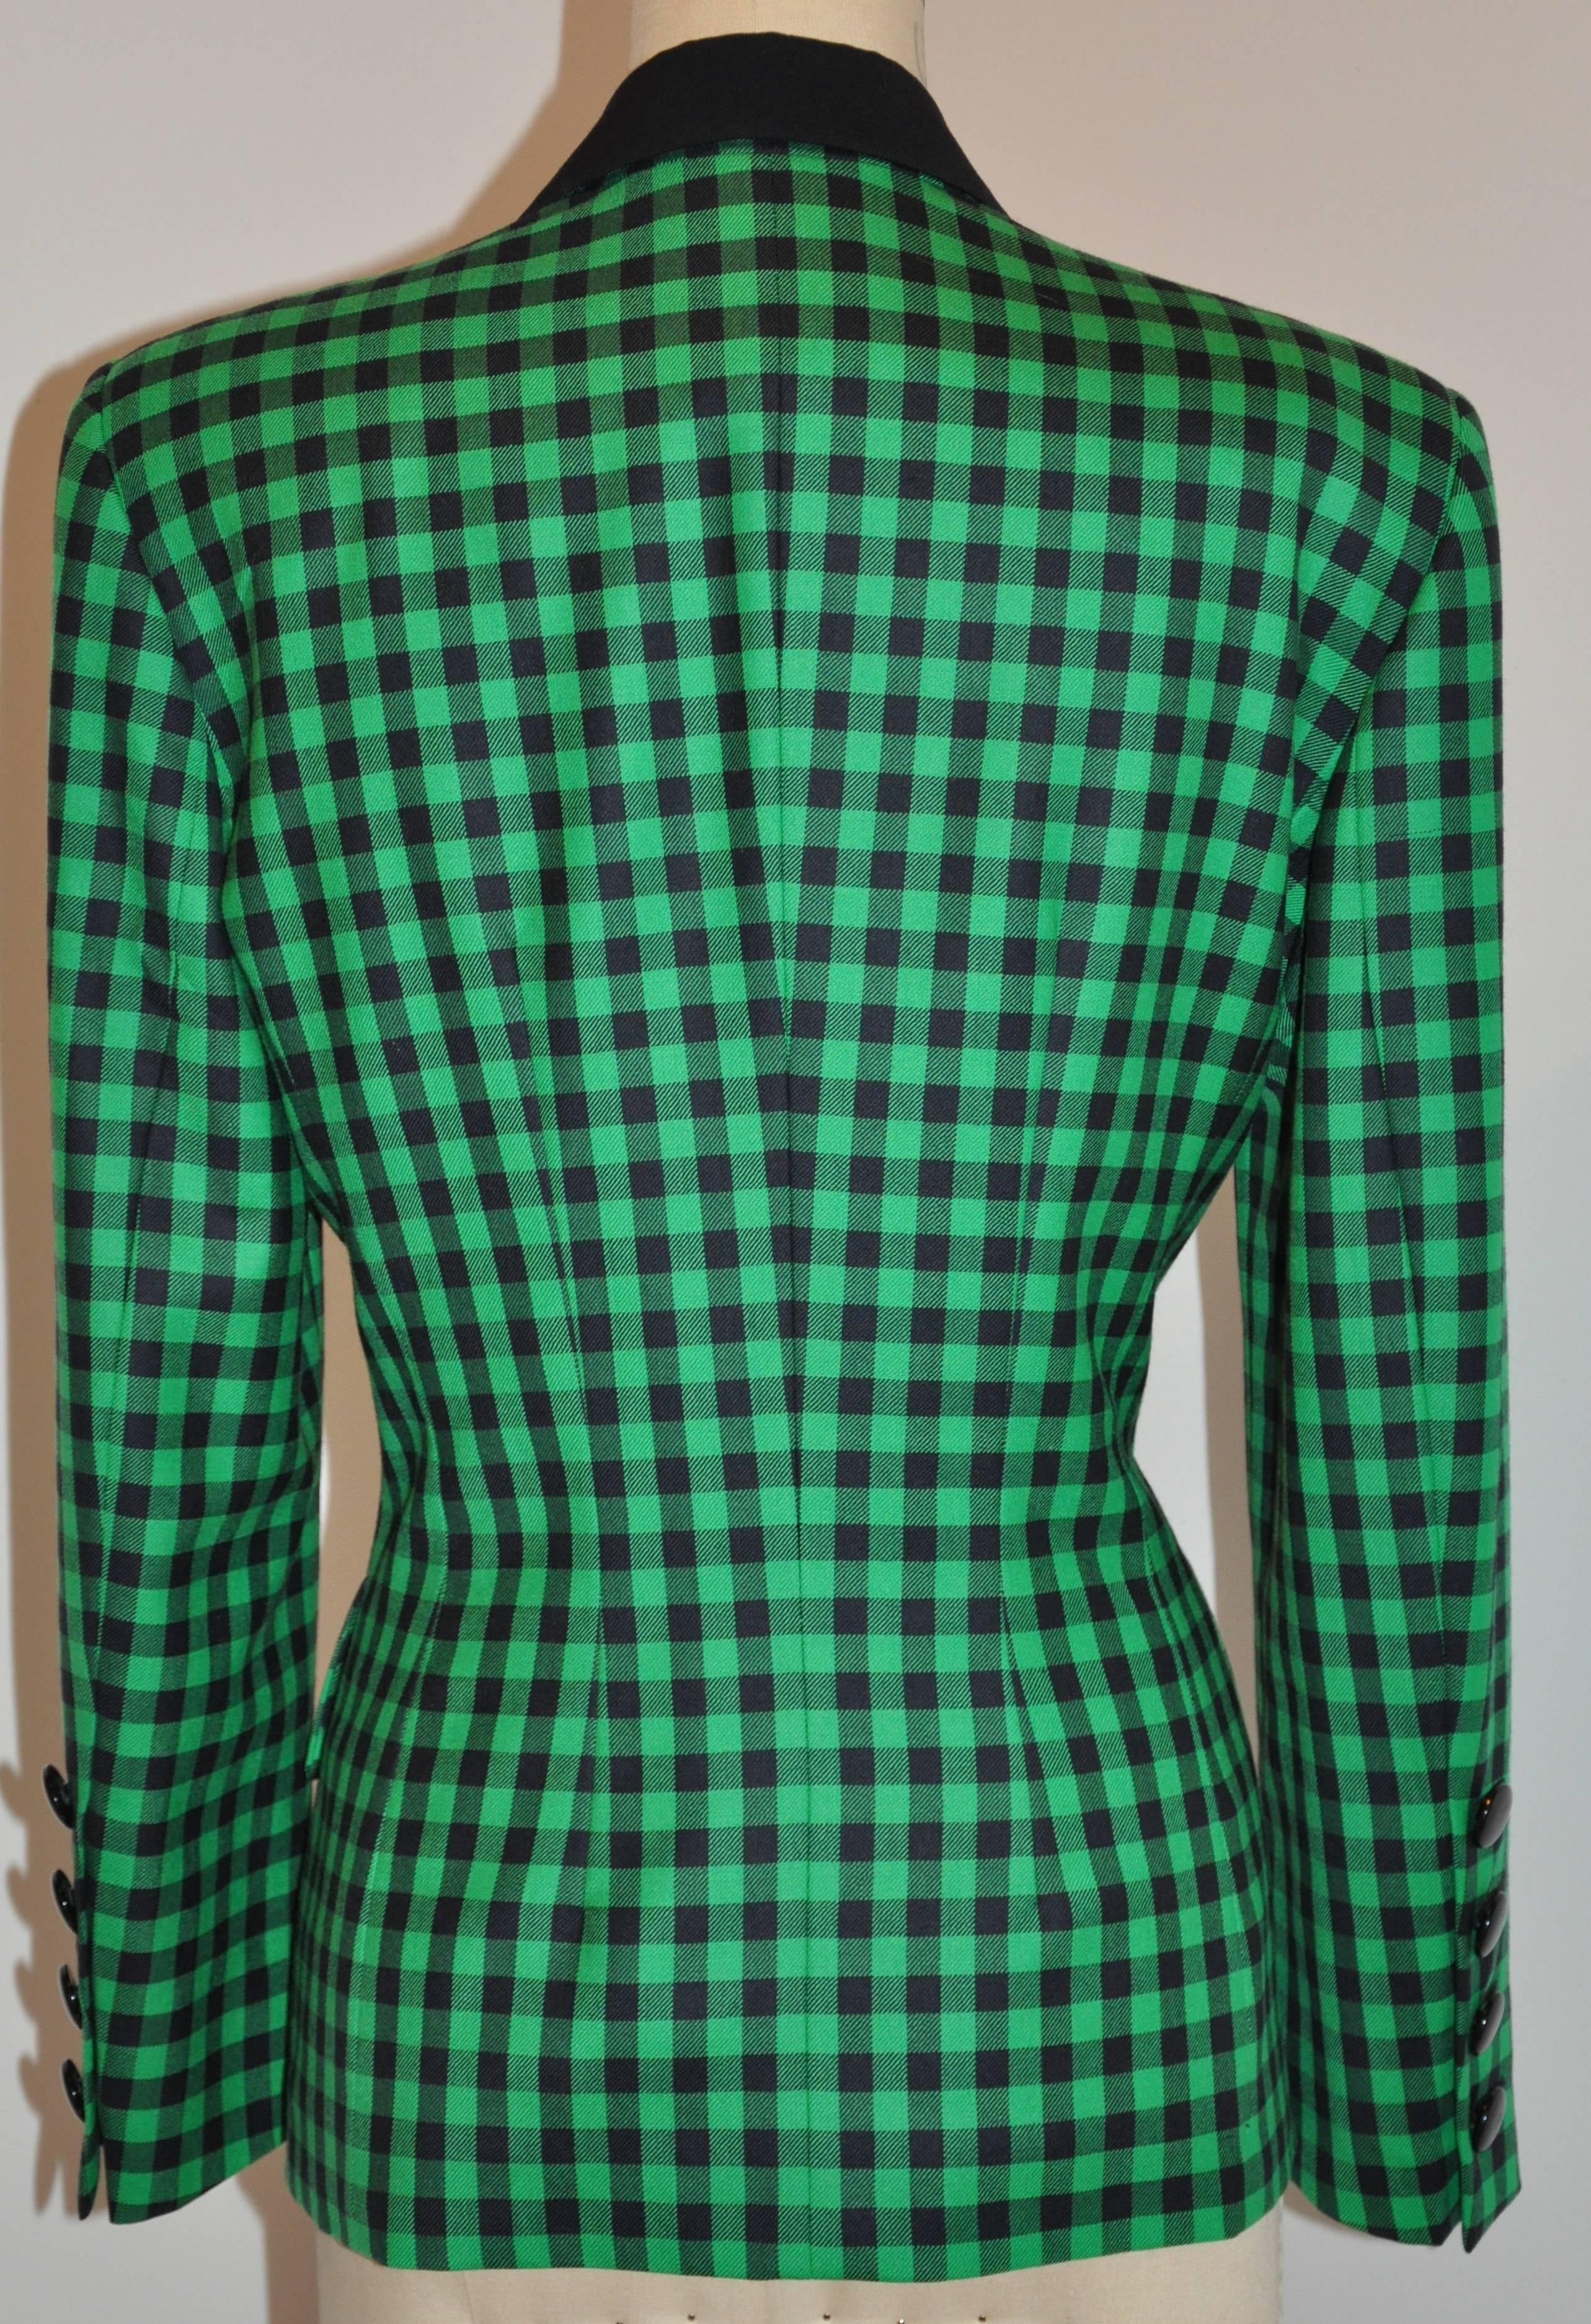           Le blazer à carreaux verts et noirs Escada bu Margaretha Ley est doté de deux poches intégrées ainsi que de rabats sur le devant et de quatre boutons sur chaque poignet. Les épaules mesurent 17